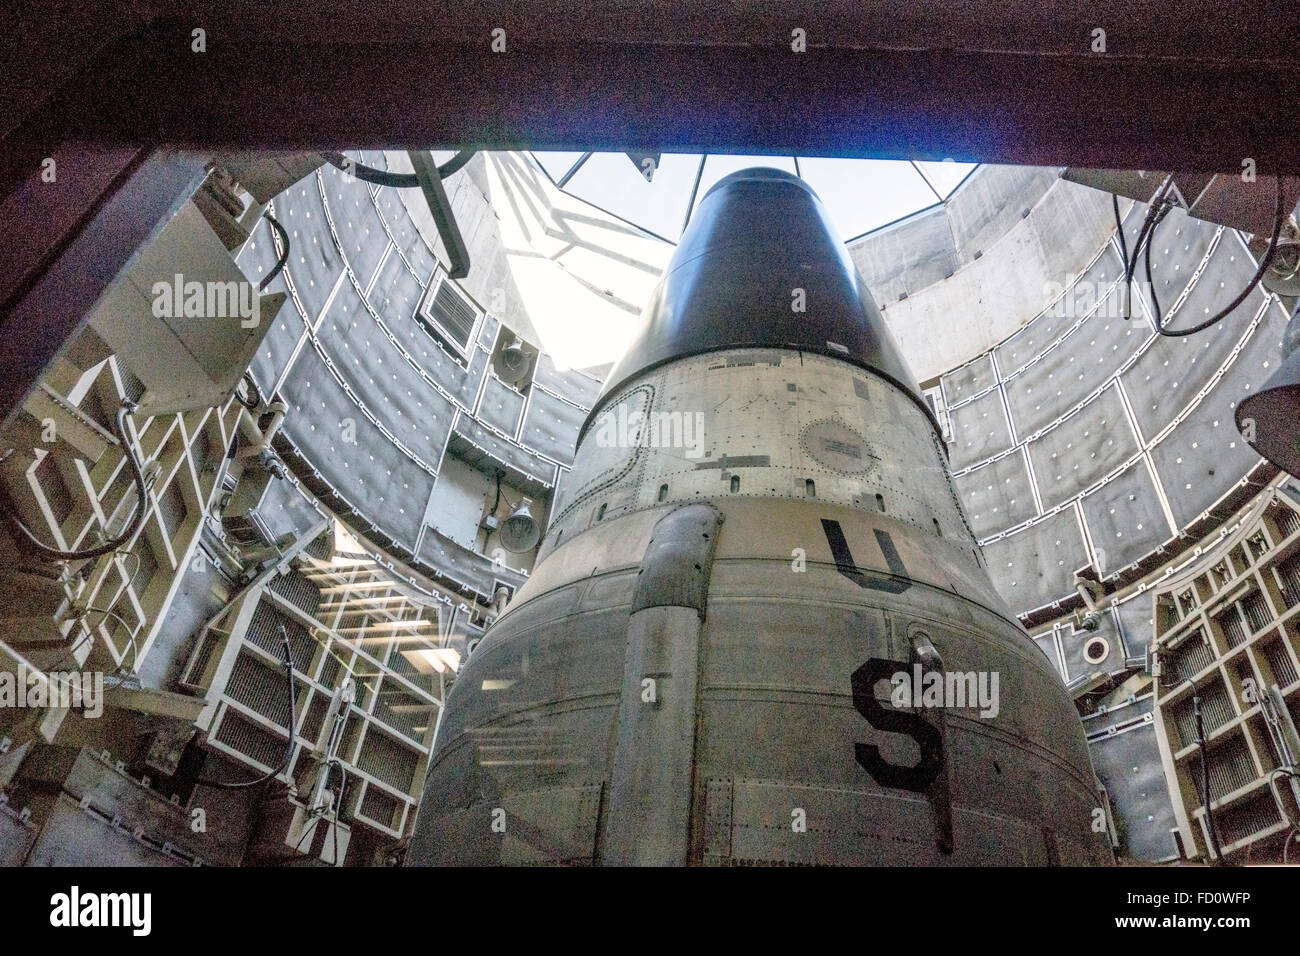 Vista minacciosa attraverso la finestra che mostra ogiva di disabili Titan II missile in posizione di lancio in doppia parete silo cilindrico Foto Stock